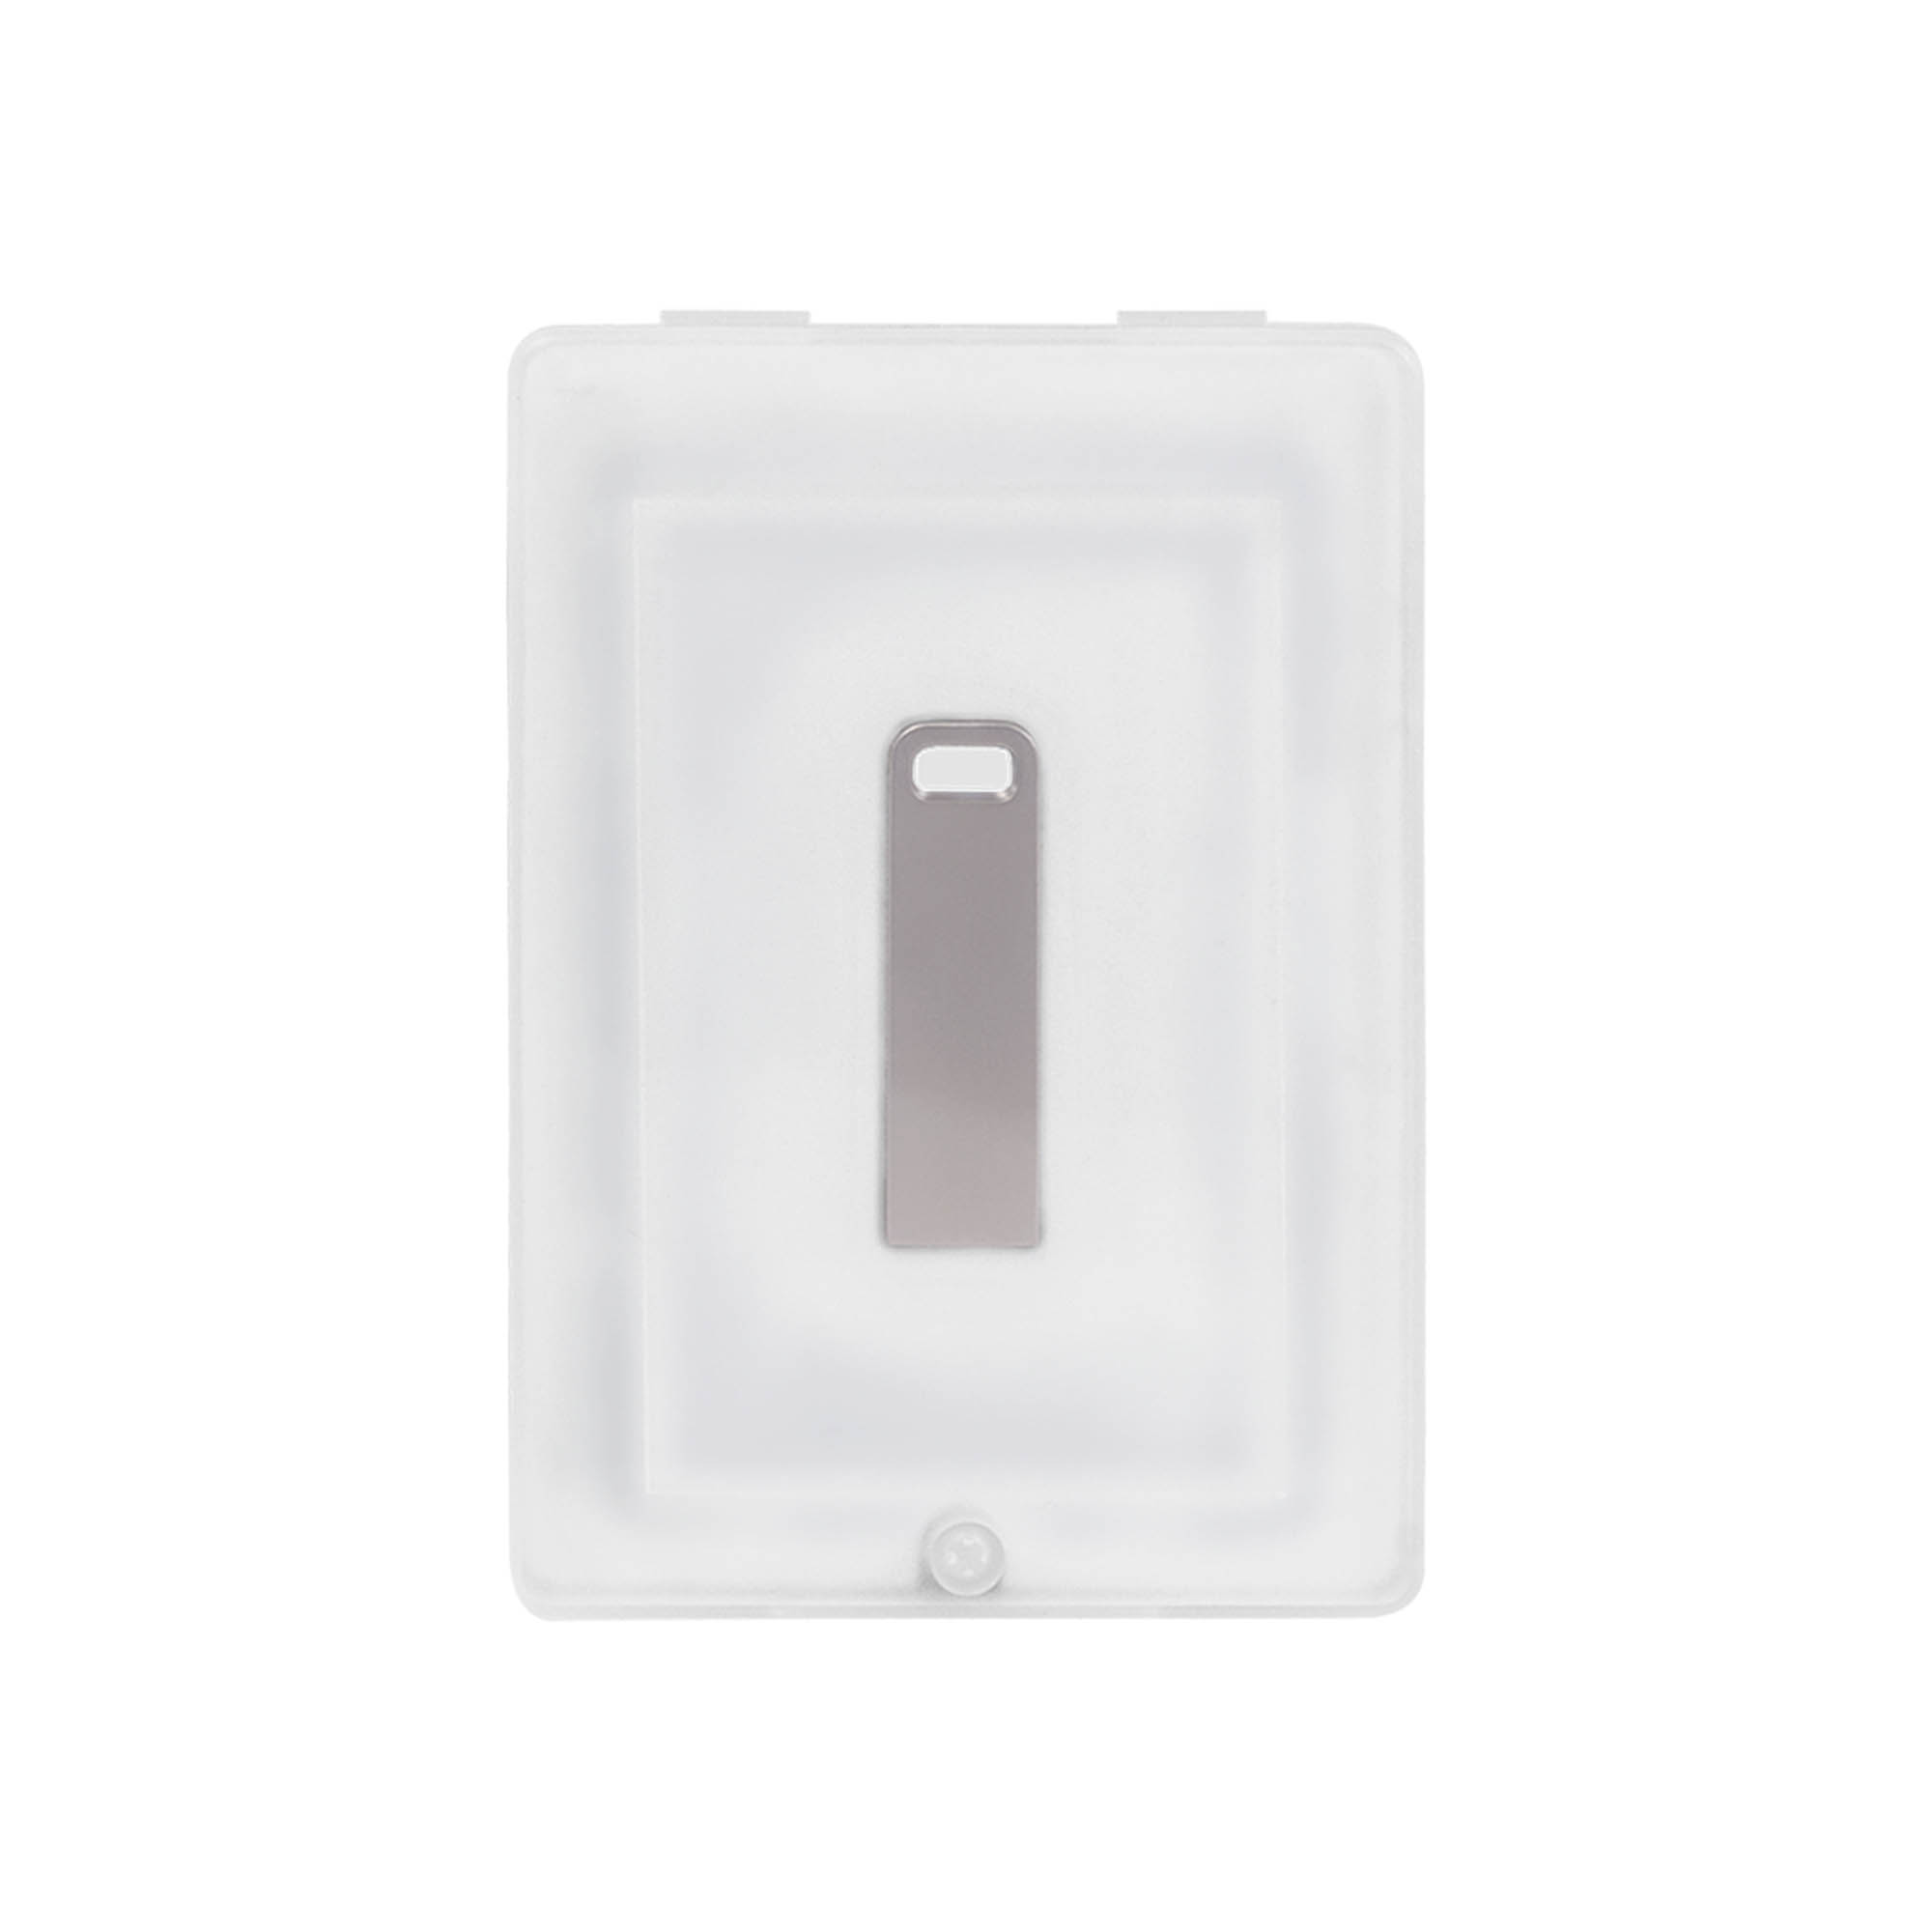 Артикул: A962192.080 — USB Флешка, Flash, 16Gb, серебряный, в подарочной упаковке